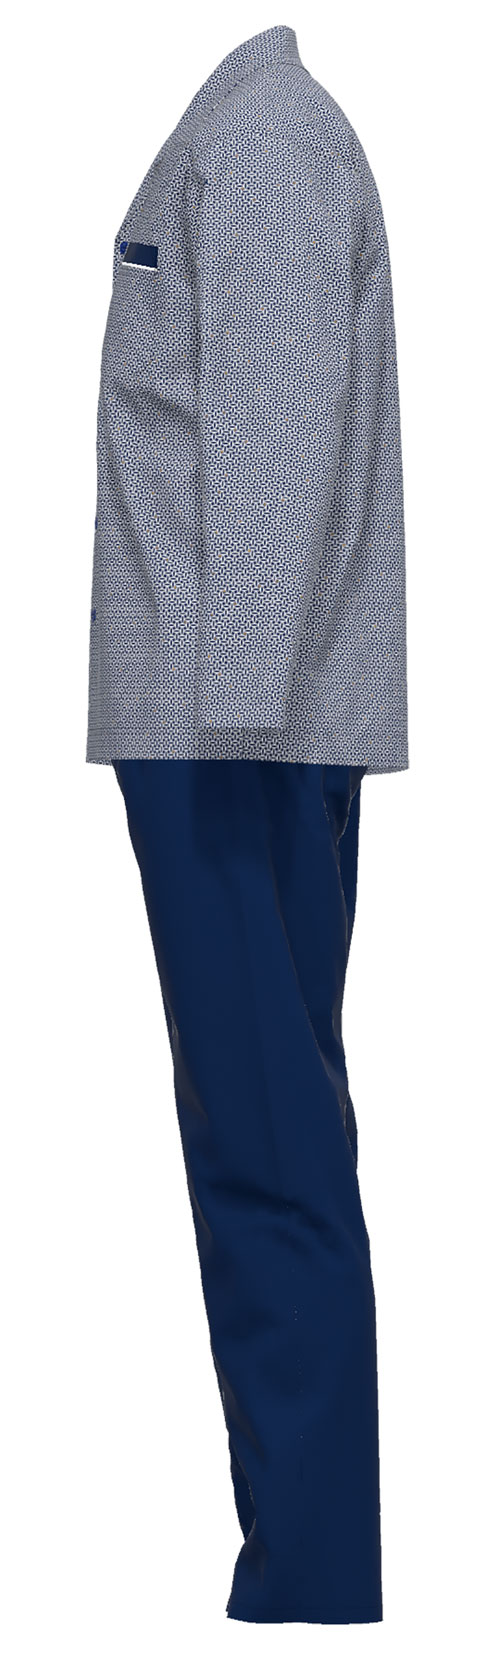 Gotzburg pyjama doorknoop blauw zijkant